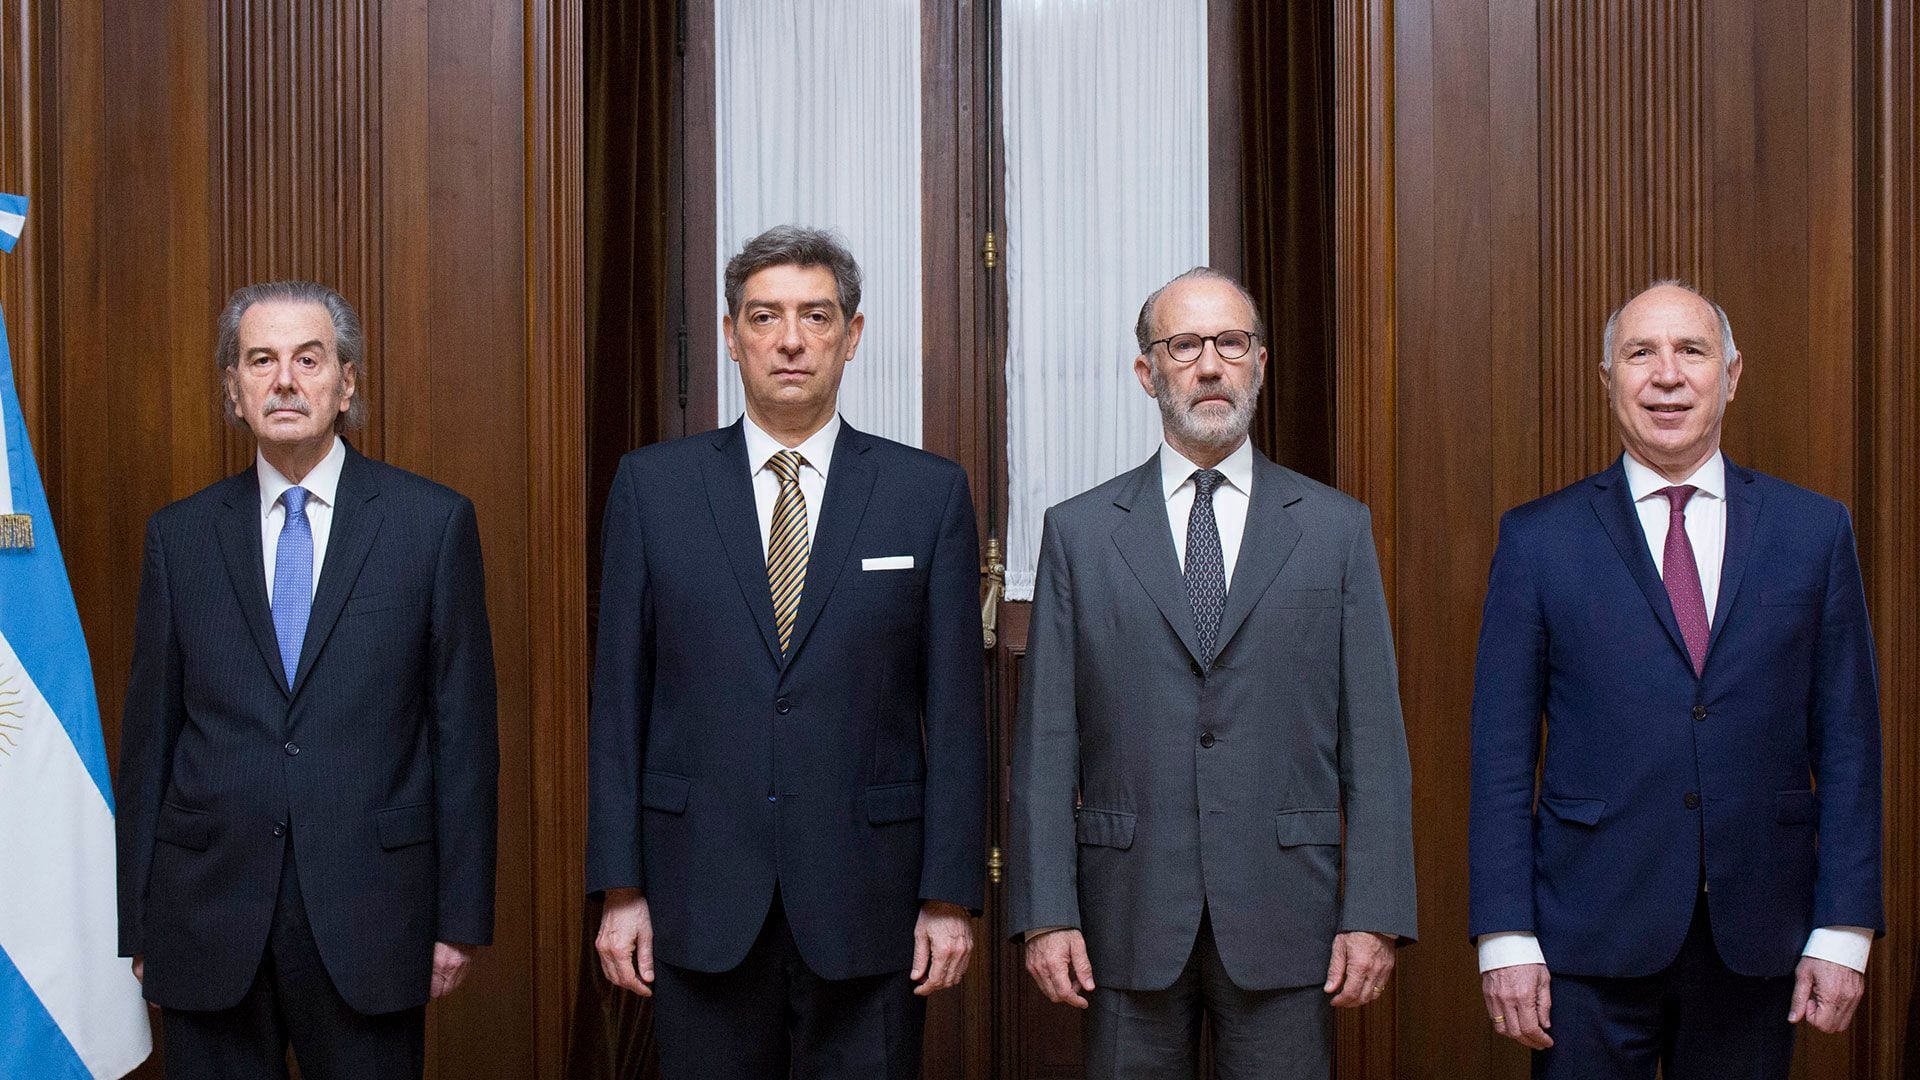 Horacio Rosatti, Carlos Rosenkrantz, Juan Carlos Maqueda y Ricardo Lorenzetti, los actuales integrantes de la Corte Suprema